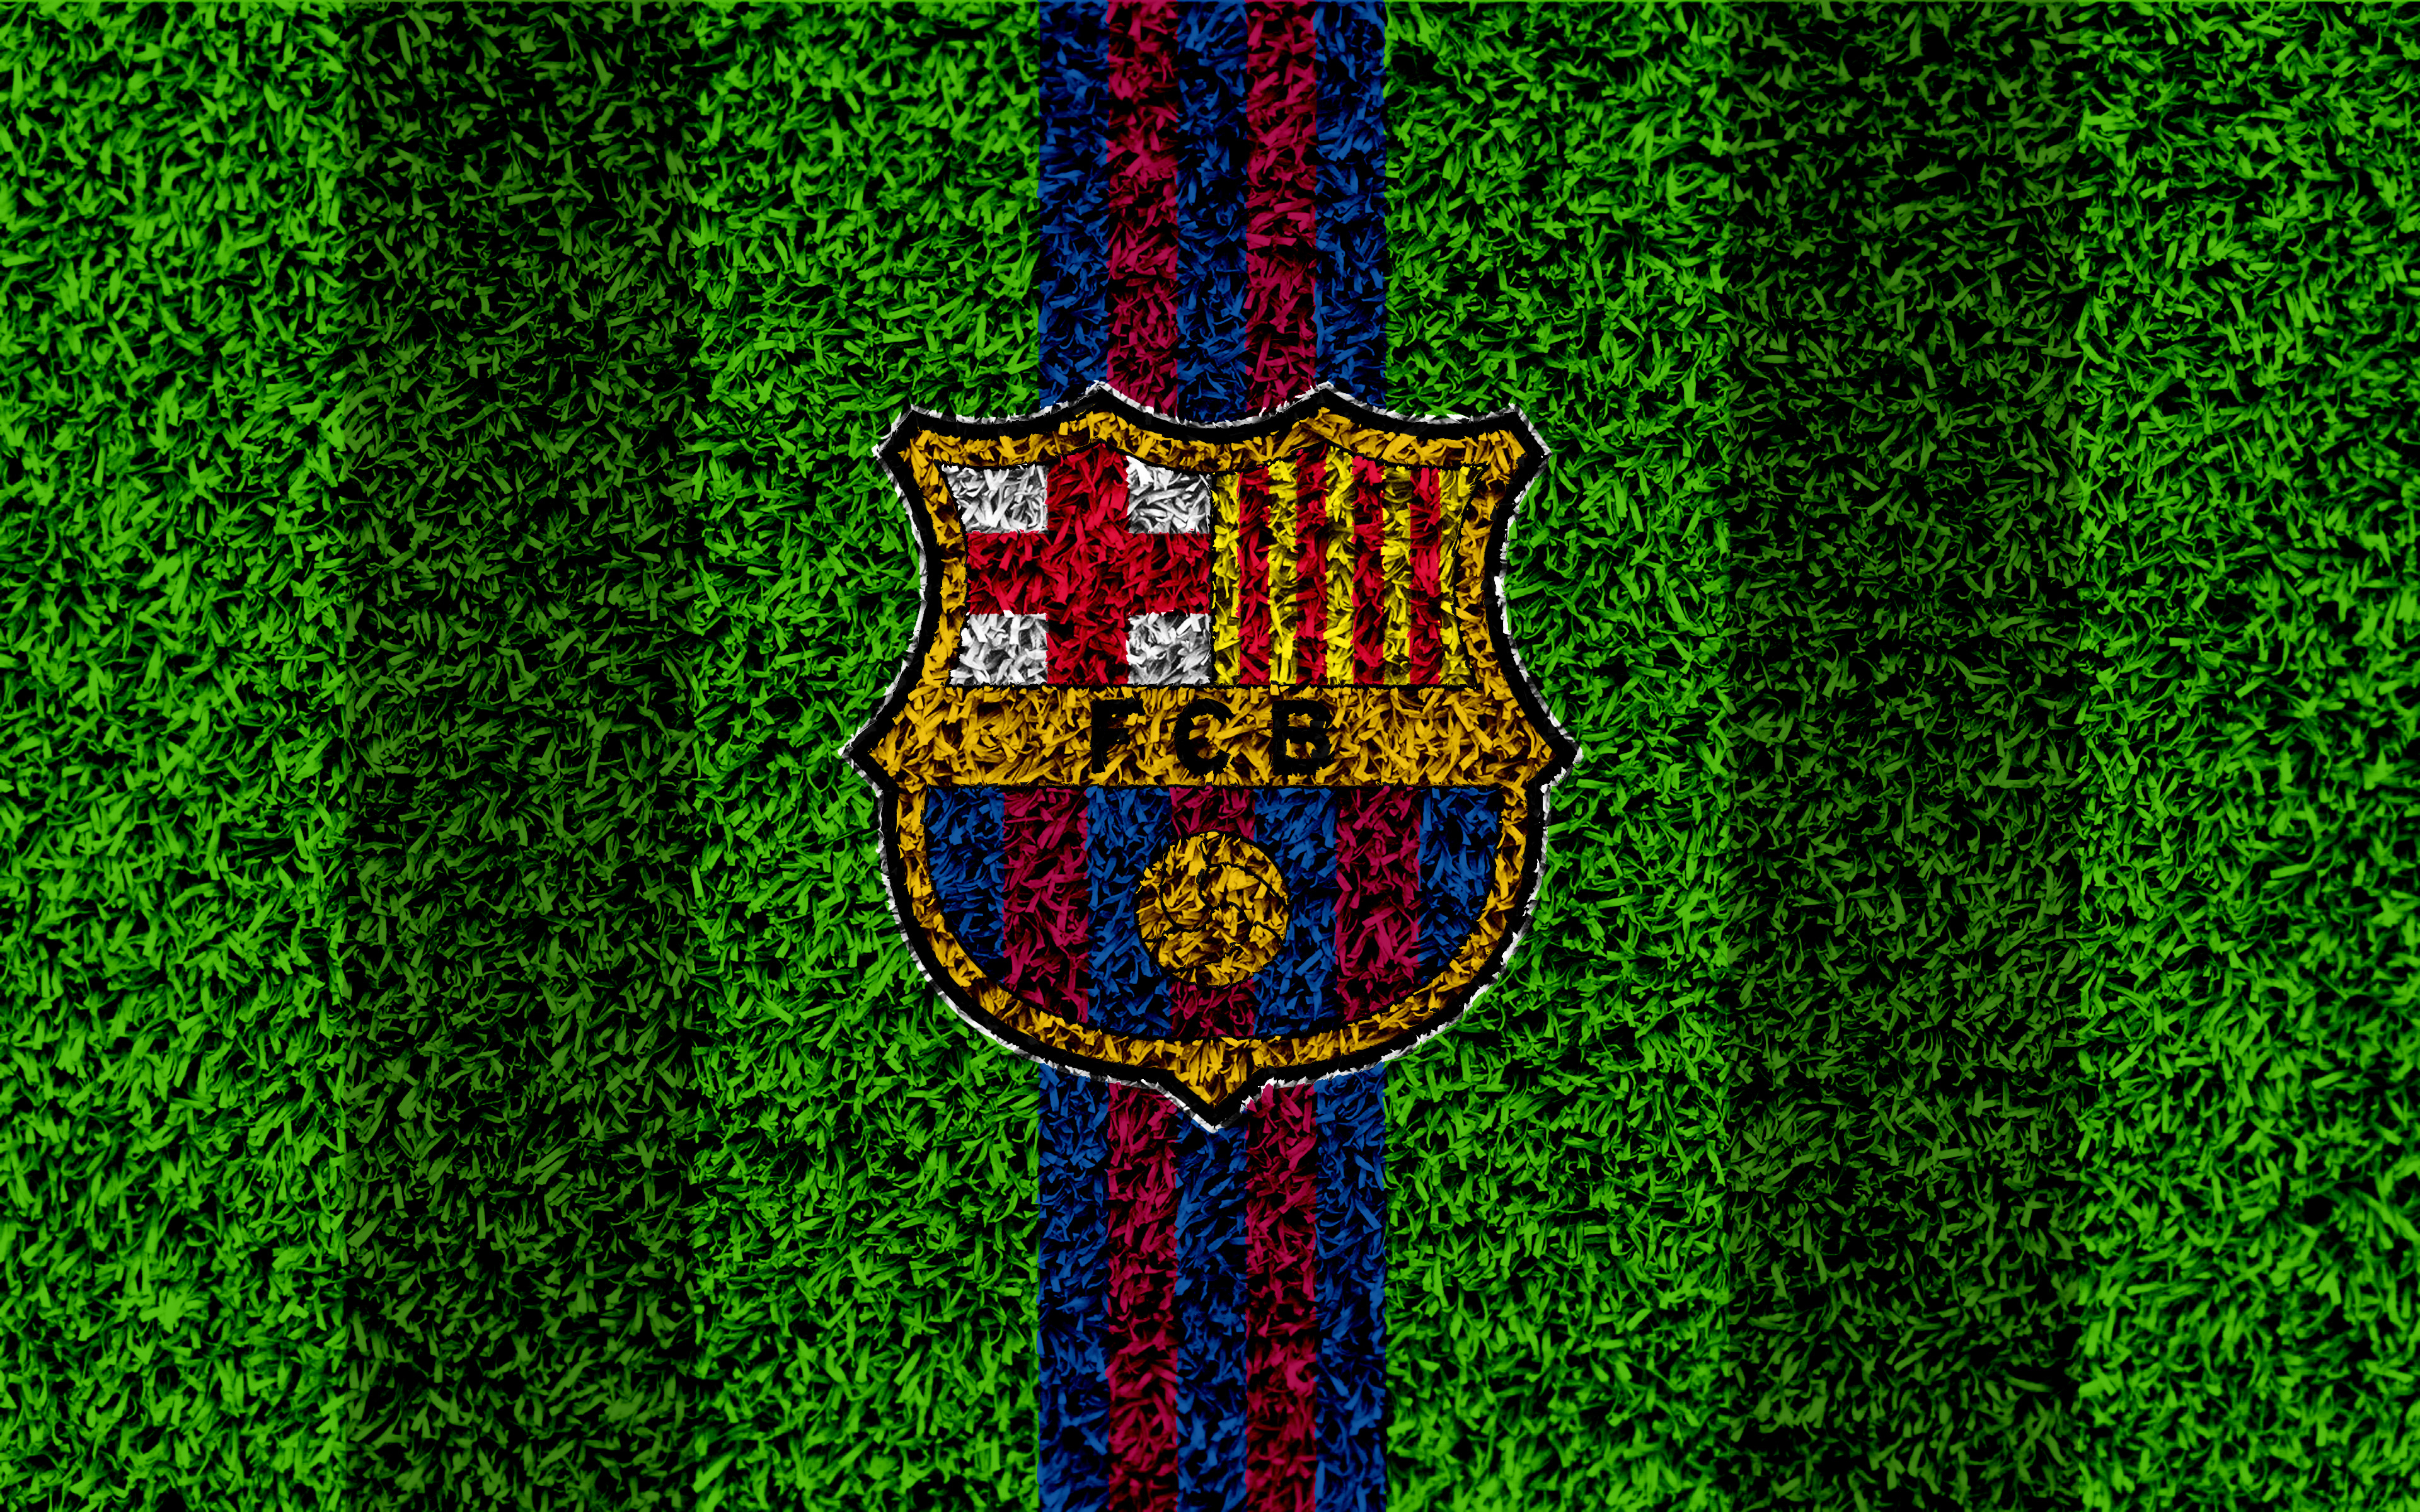 Скачать обои бесплатно Футбол, Футбольный, Виды Спорта, Лого, Футбольный Клуб Барселона картинка на рабочий стол ПК